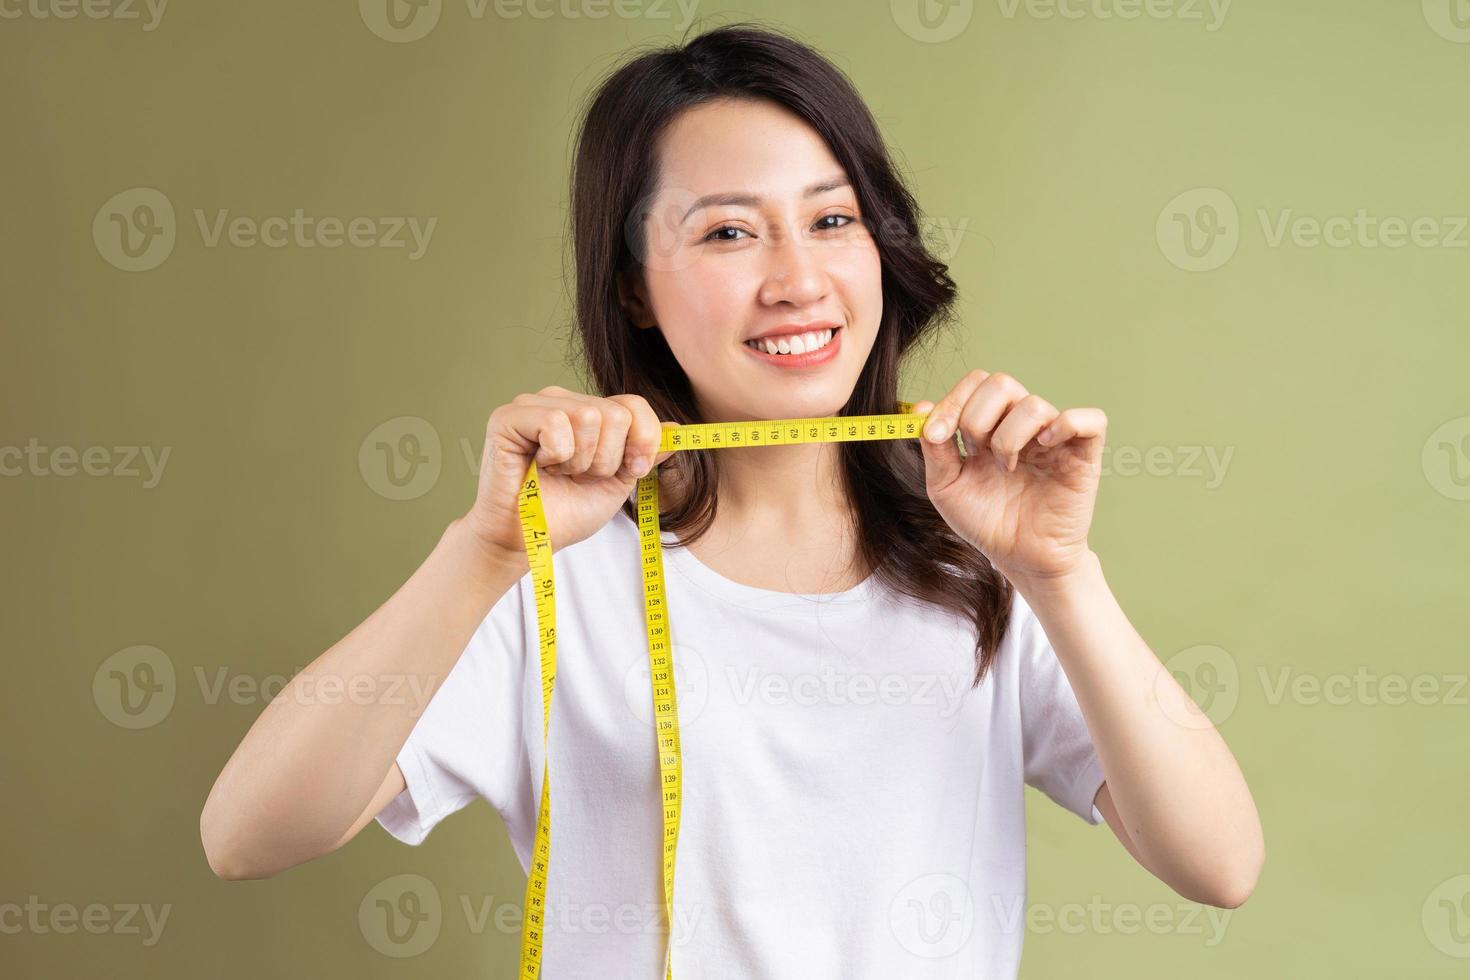 giovane ragazza asiatica che tiene felicemente il metro a nastro dopo aver perso peso foto